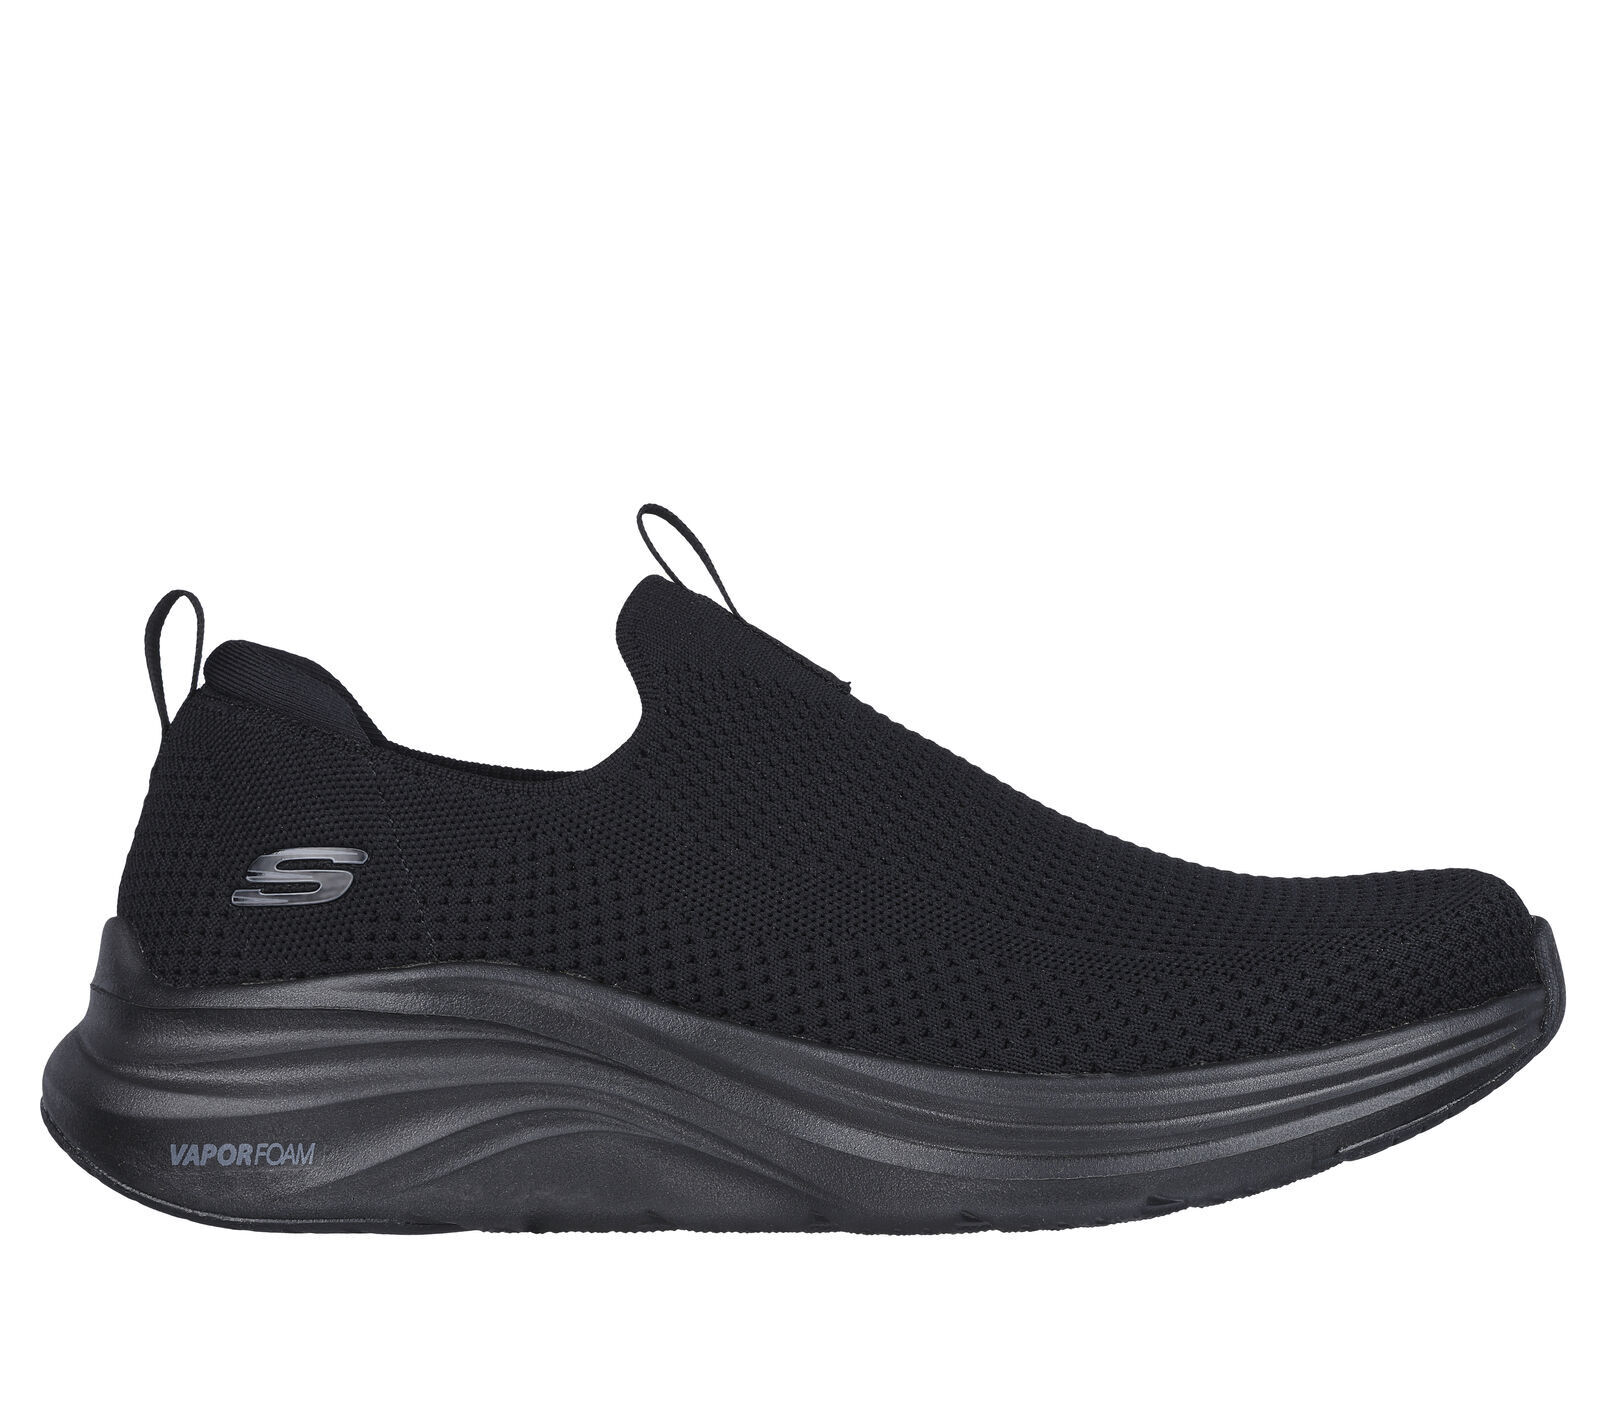 Skechers Vapor Foam - Covert - Lifestyle shoes - Men's | Hardloop